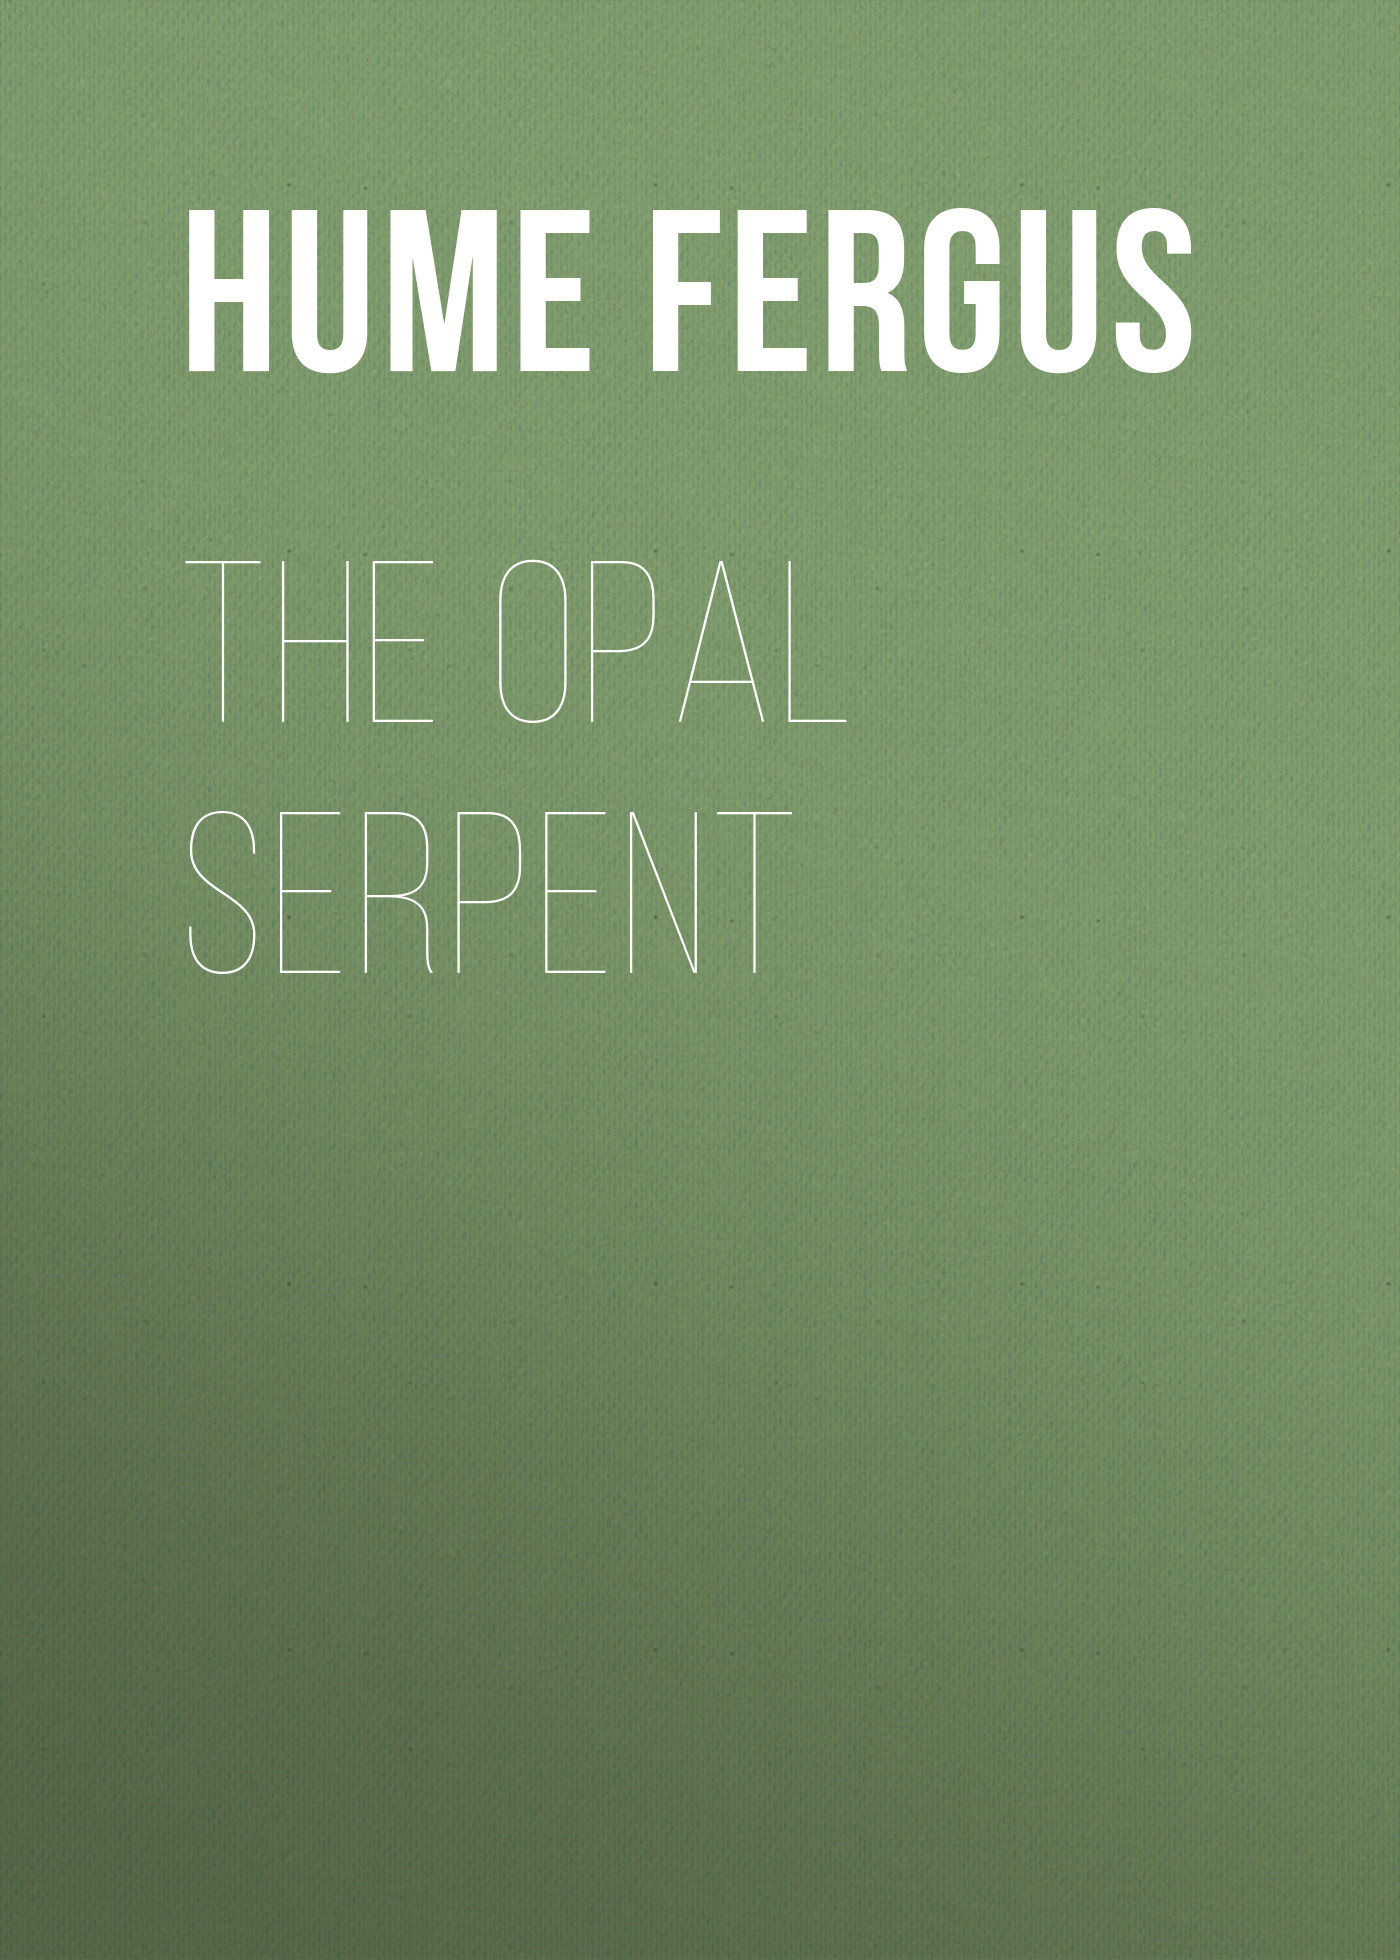 Книга The Opal Serpent из серии , созданная Fergus Hume, может относится к жанру Классические детективы, Зарубежные детективы, Зарубежная классика, Иностранные языки. Стоимость электронной книги The Opal Serpent с идентификатором 25561380 составляет 0 руб.